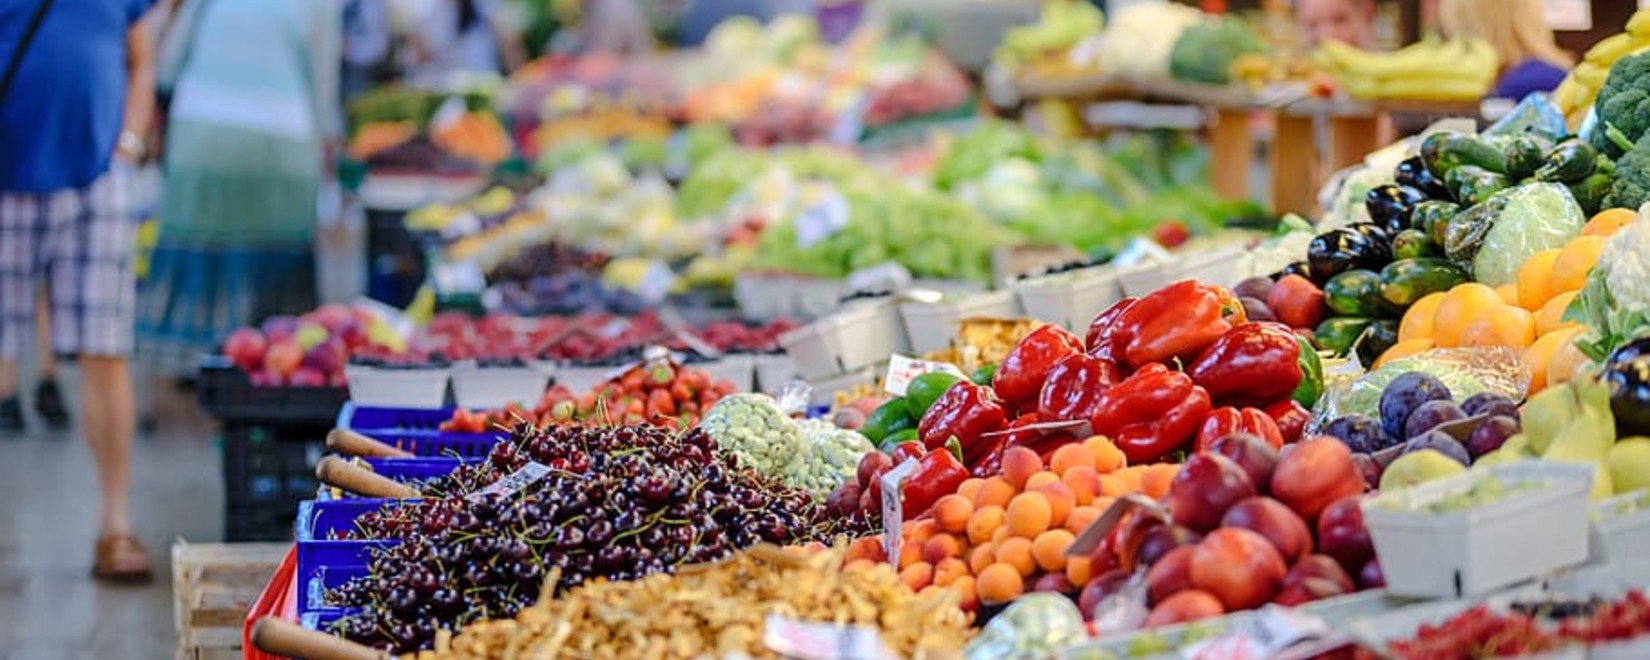 Инфляция замедляется: цены на овощи и фрукты снижаются, эксперты прогнозируют дальнейшее снижение к концу года